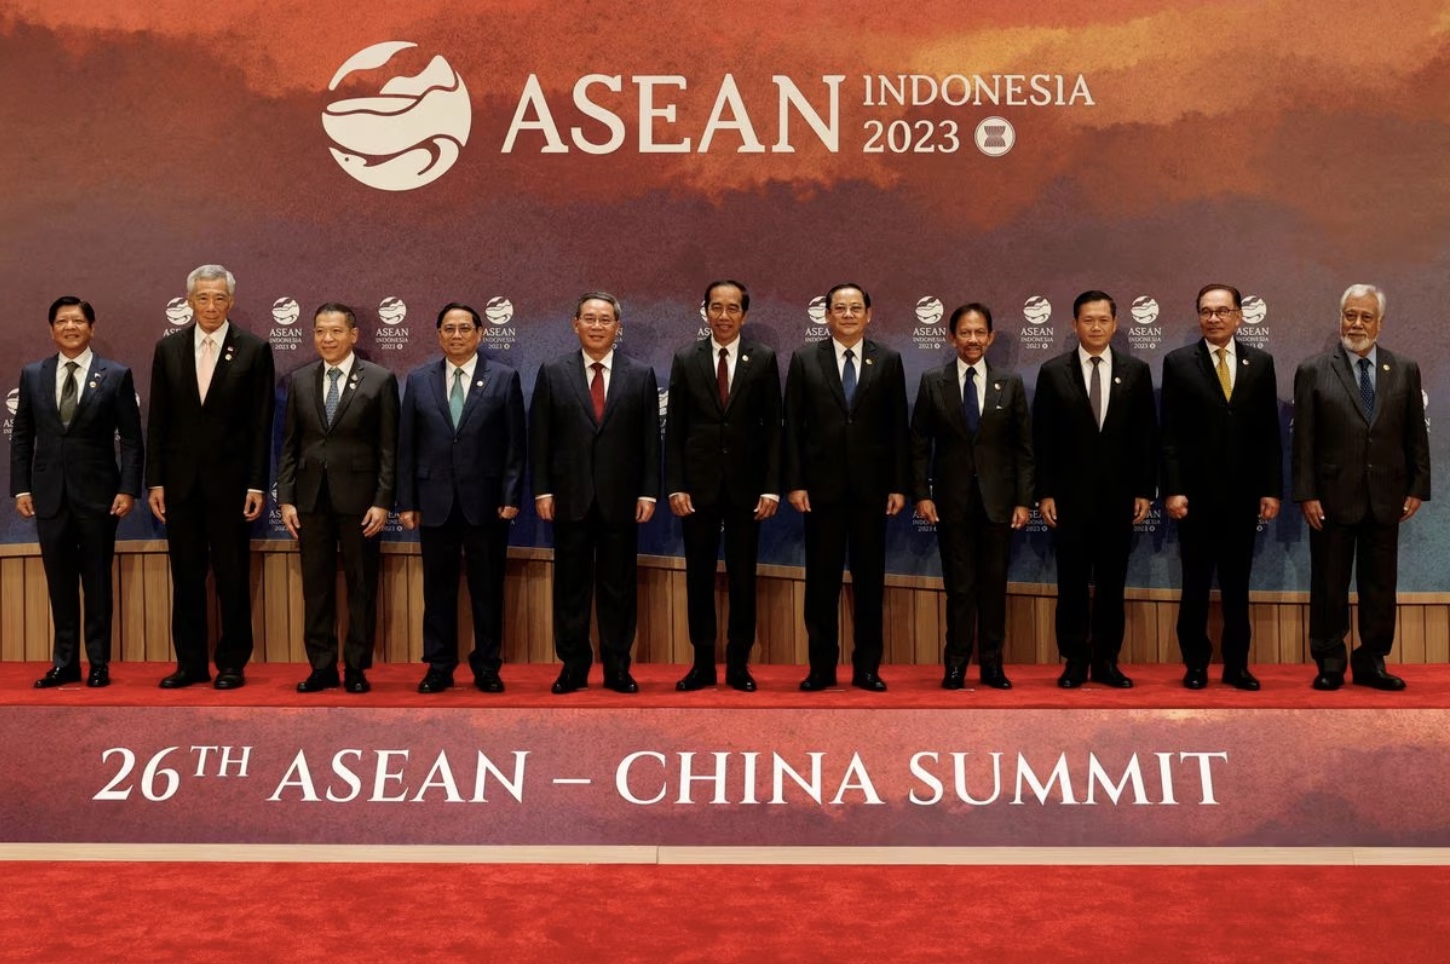 جاکارتا: آسه آن برای مهار توسعه طلبی پکن در دریای چین جنوبی تشکیل جلسه می دهد